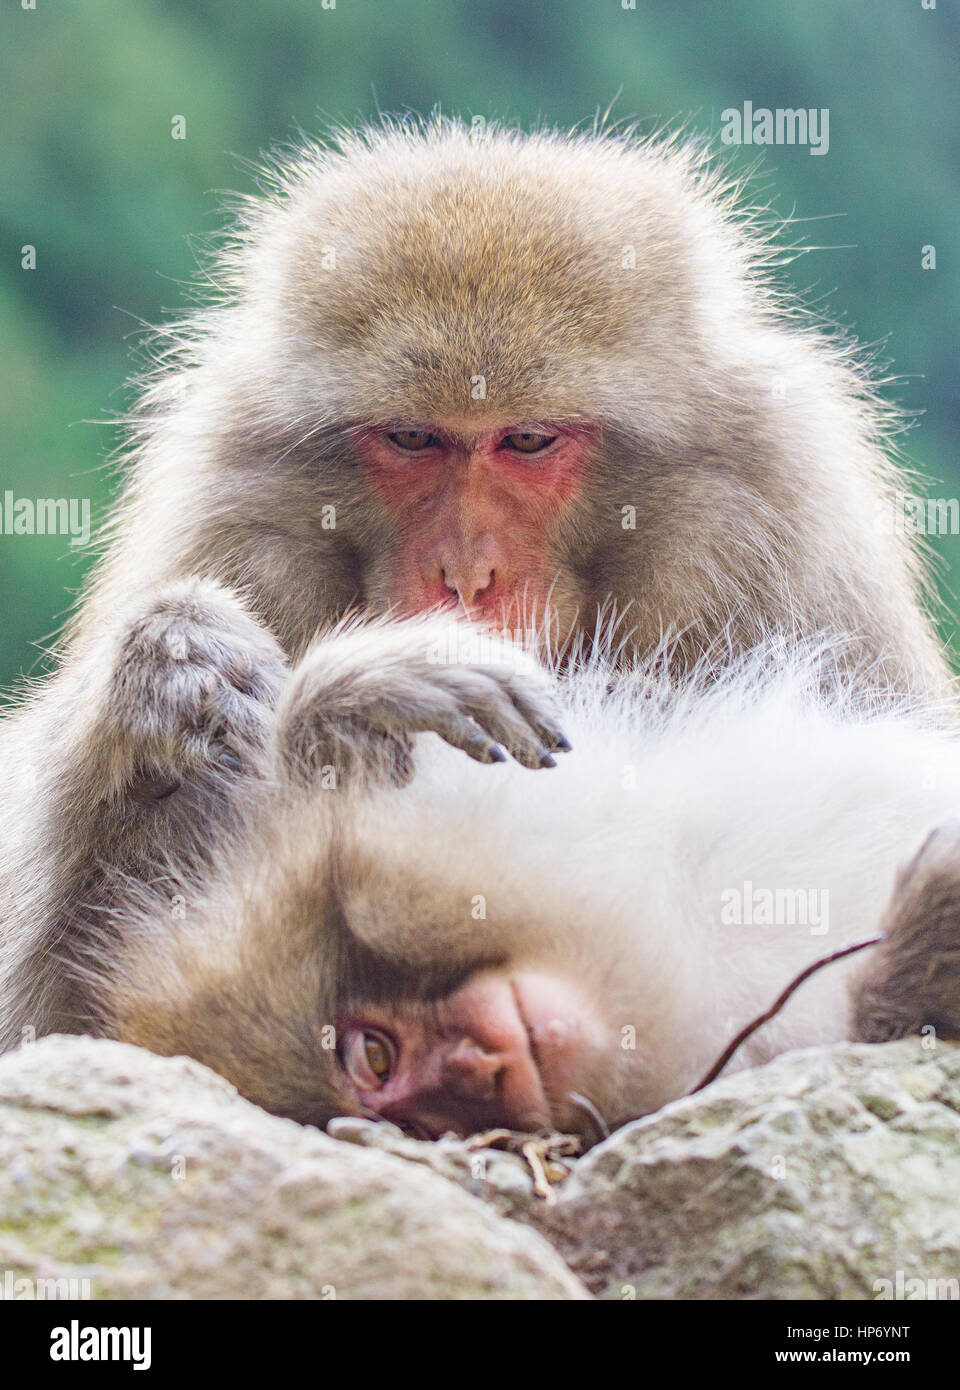 Japanischen Makaken (oder Snow Monkey) in und um eine heiße Quelle im Sommer. Stockfoto